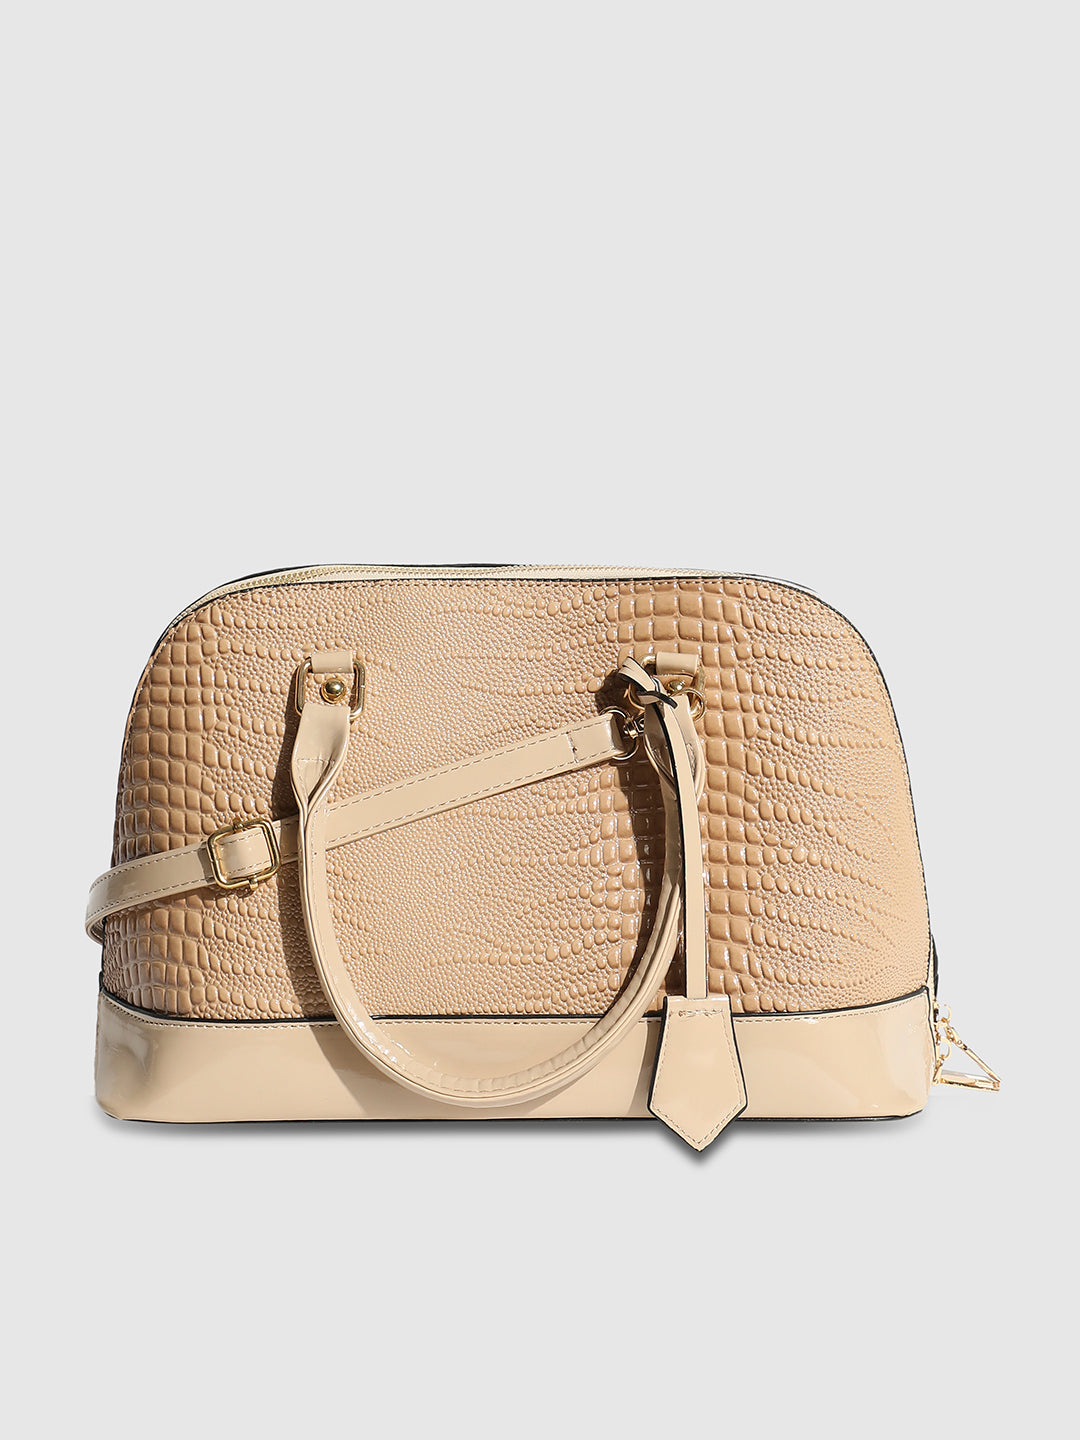 Croc Top Handle Handbag - Beige